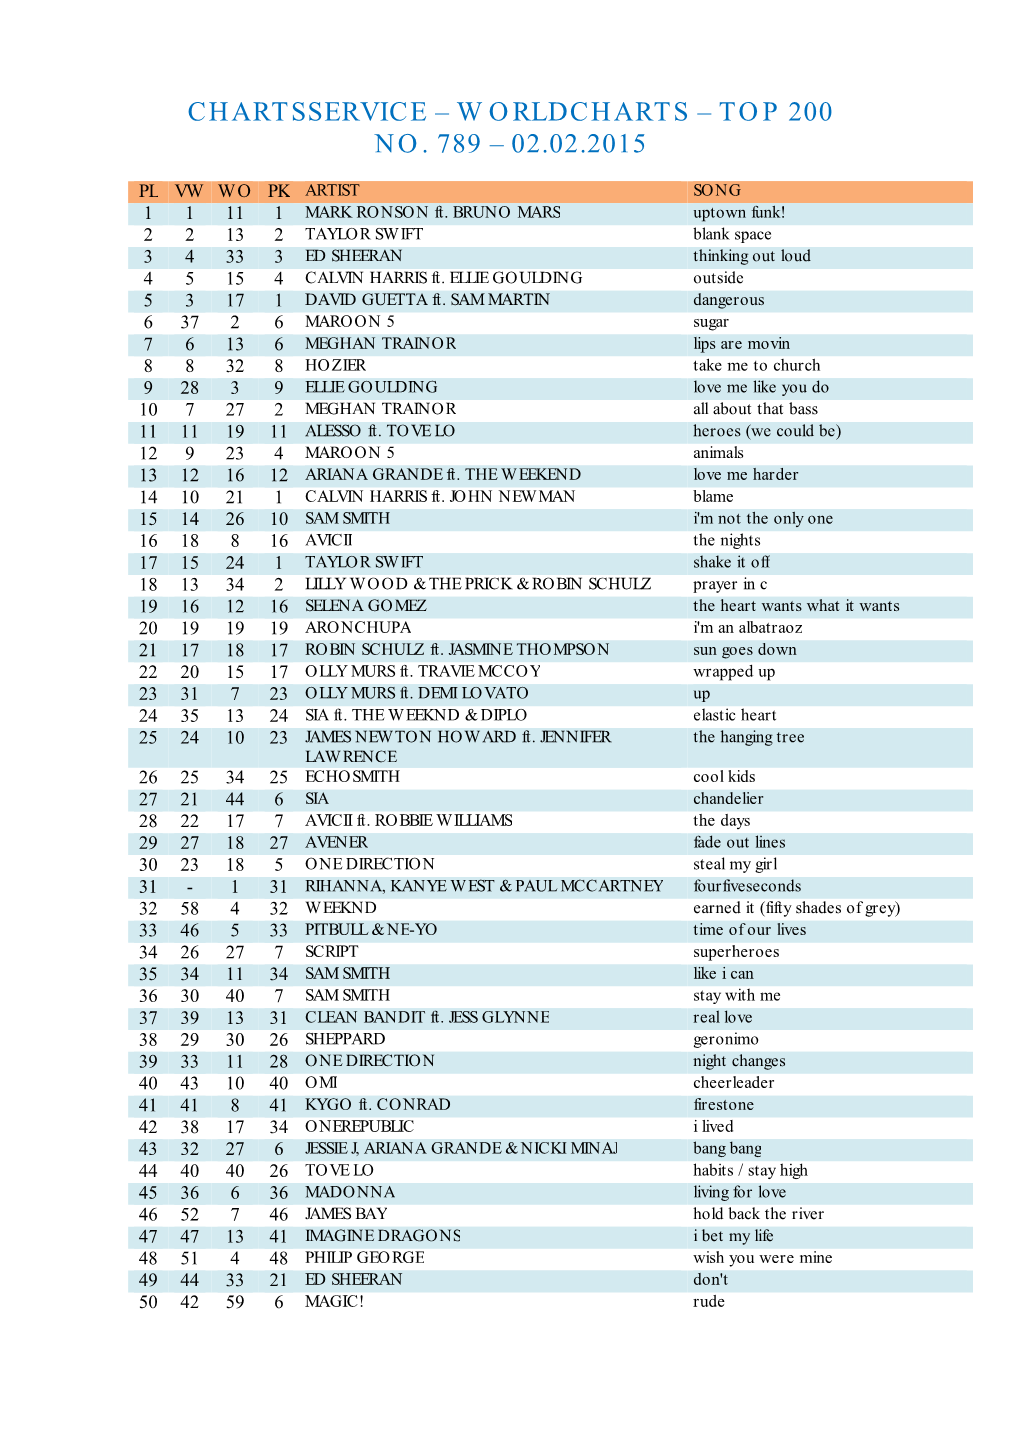 Top 200 No. 789 – 02.02.2015